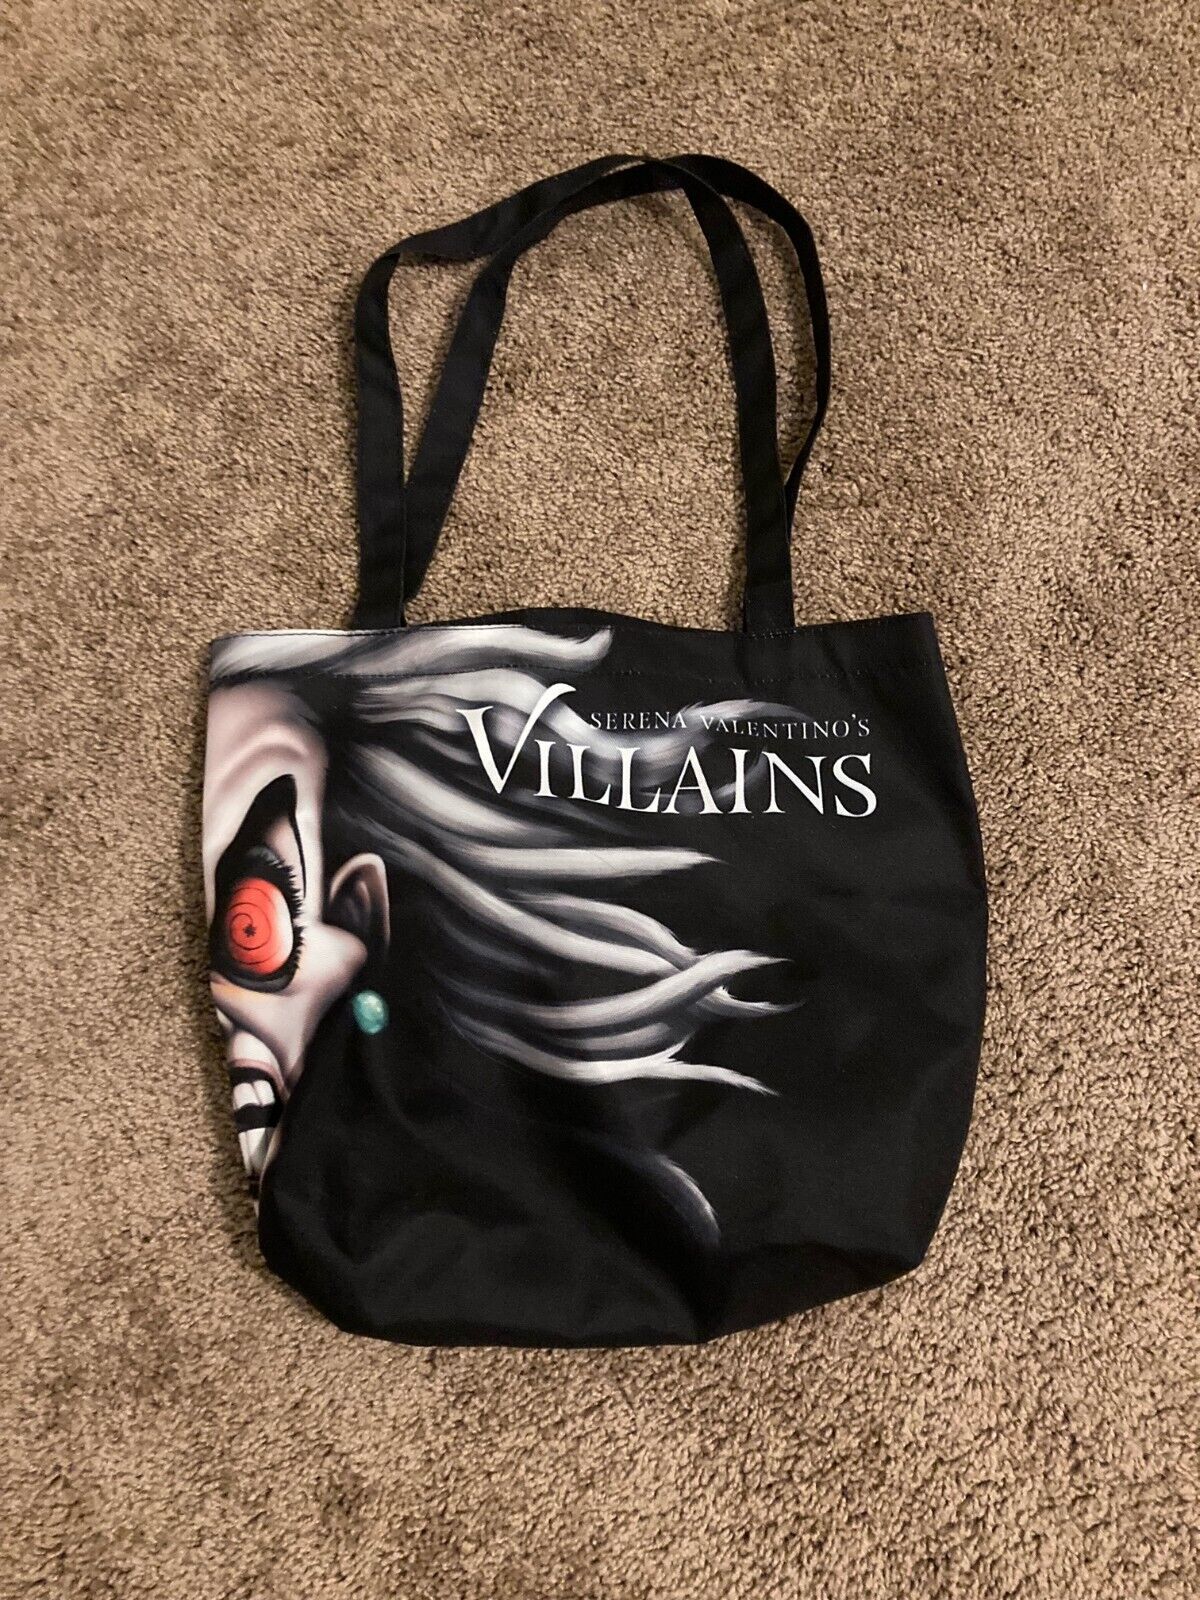 SDCC 2022 Disney Villains Cruella de Vil Exclusive Tote Bag